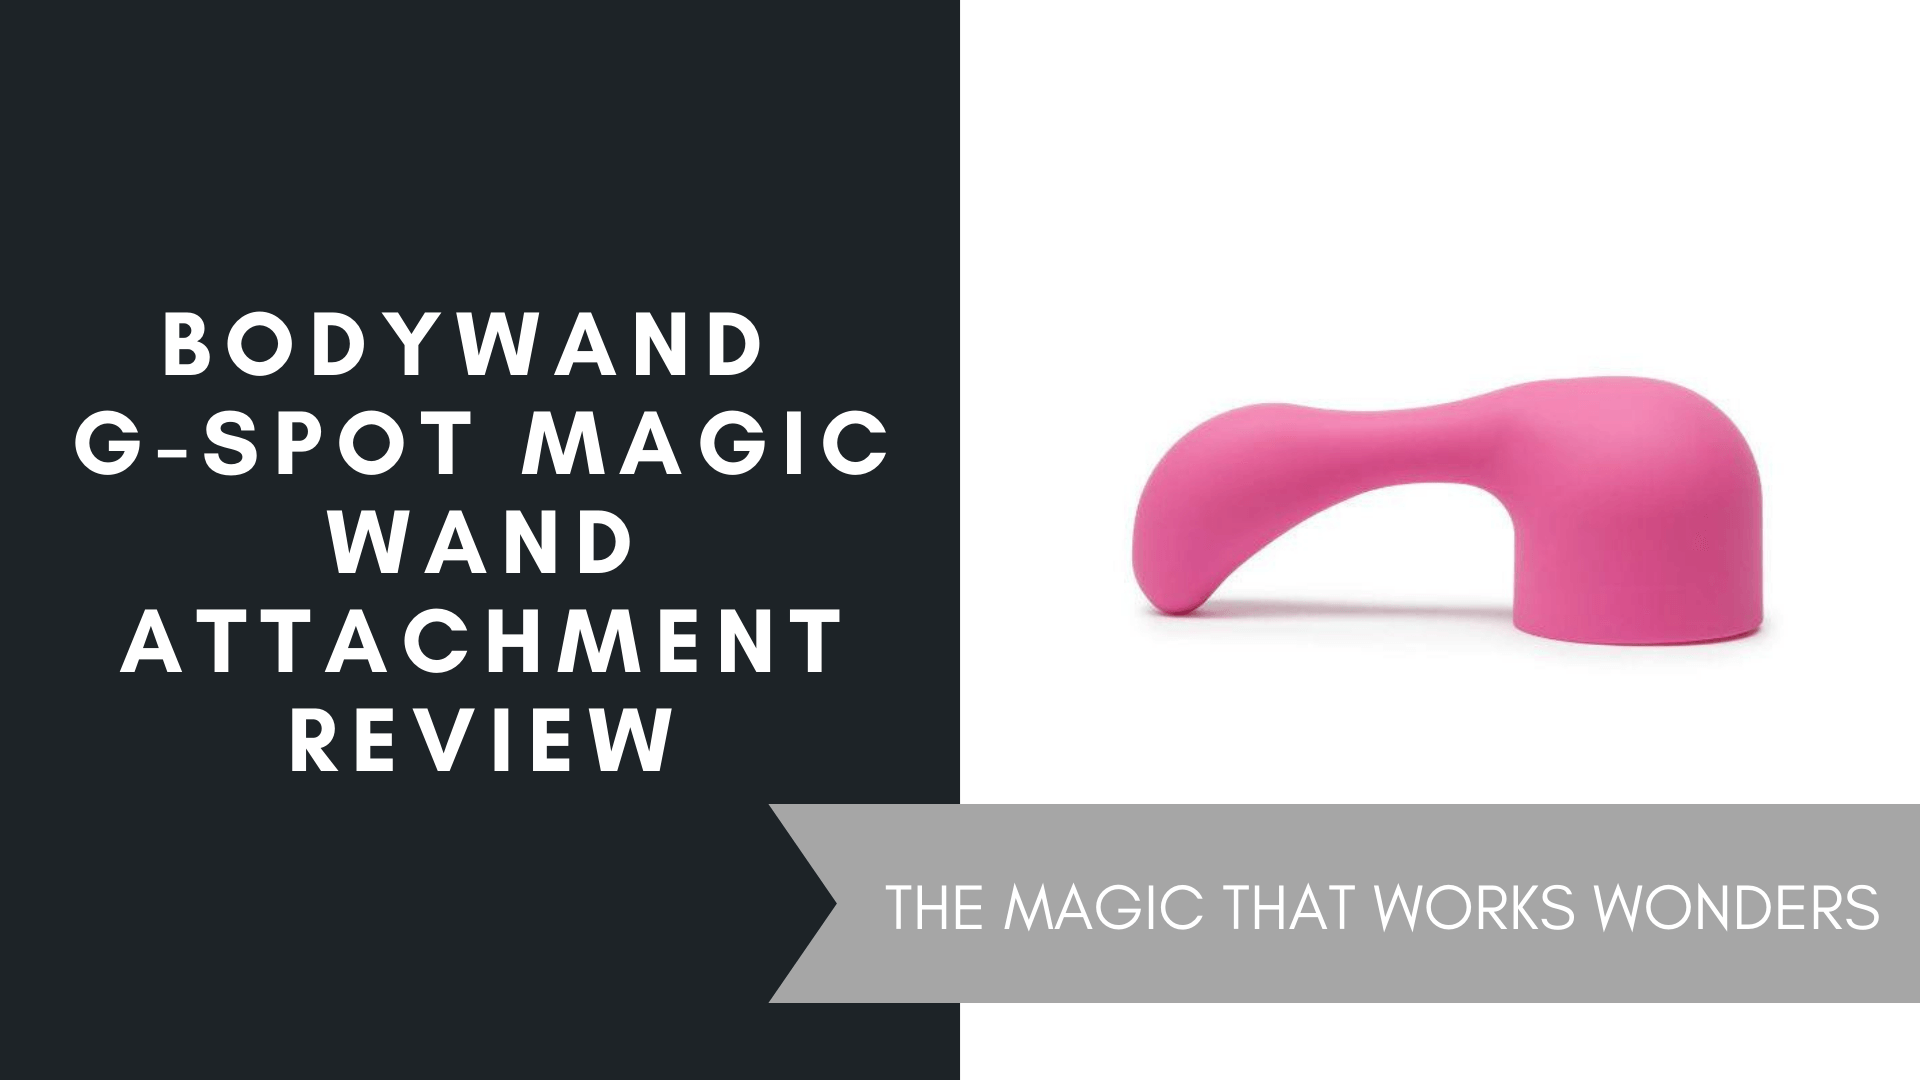 Bodywand G-Spot Magic Wand Attachment Review, June 2021